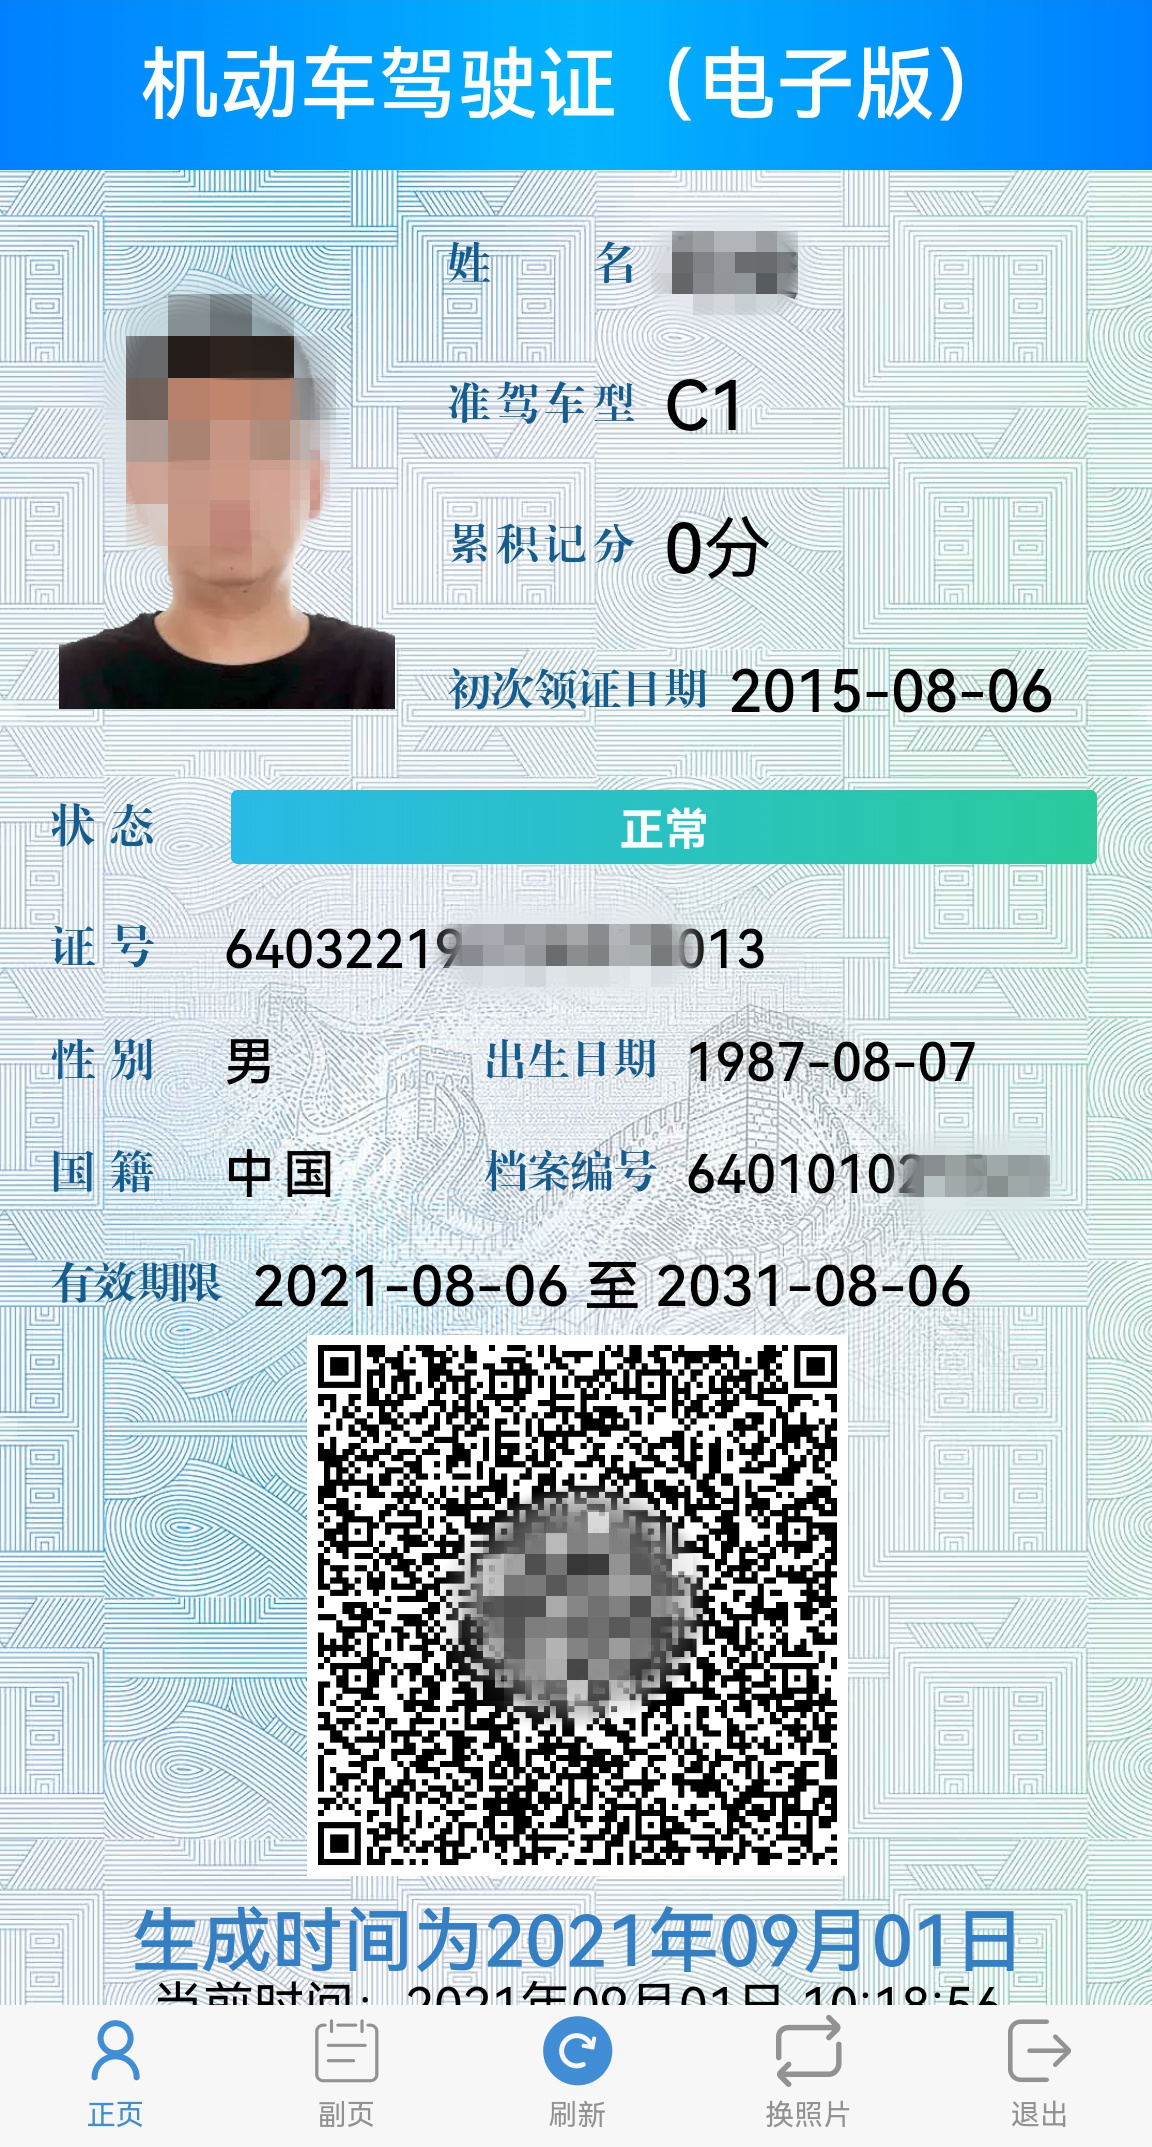 银川已有15万人申领电子驾驶证 年底前将在宁夏全面推广